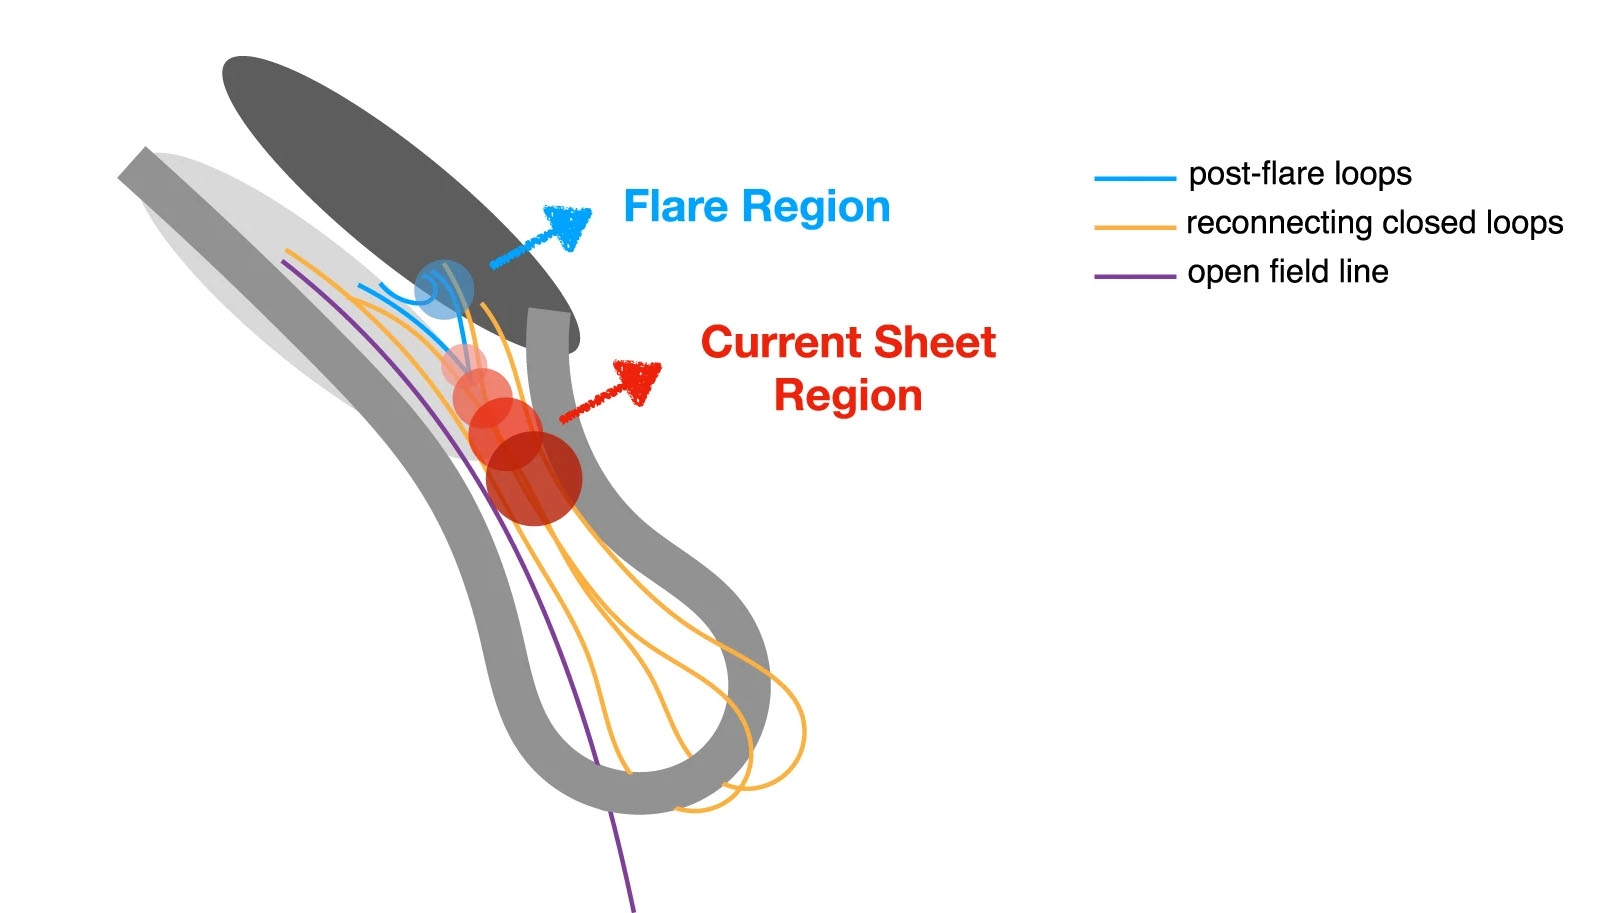 研究團隊提出的準周期脈動形成機制。灰色的寬曲線代表爆發的絲狀物，金色和紫色的覆蓋場代表上覆磁場。較淺和較深的灰色橢圓分別代表磁場的正極性和負極性。從較淺到較深，圓形的藍色和紅色代表在耀斑環流和重新連接的CS區域分別位於強和弱微波源。來源：NATURE